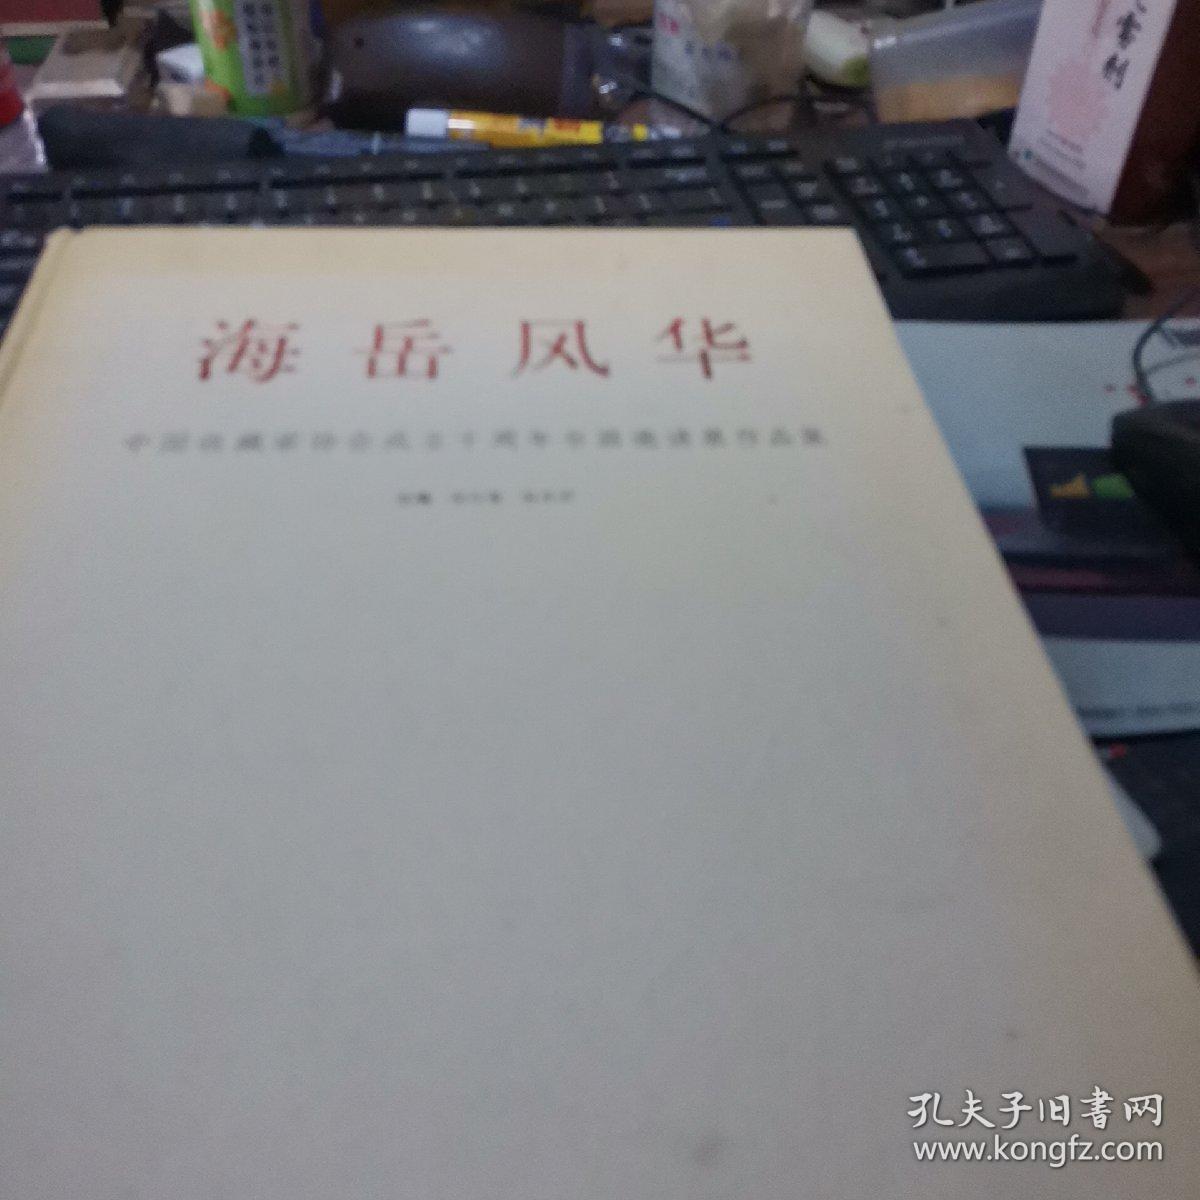 海岳风华一中国收藏家协会成立十周年书画邀请展作品集